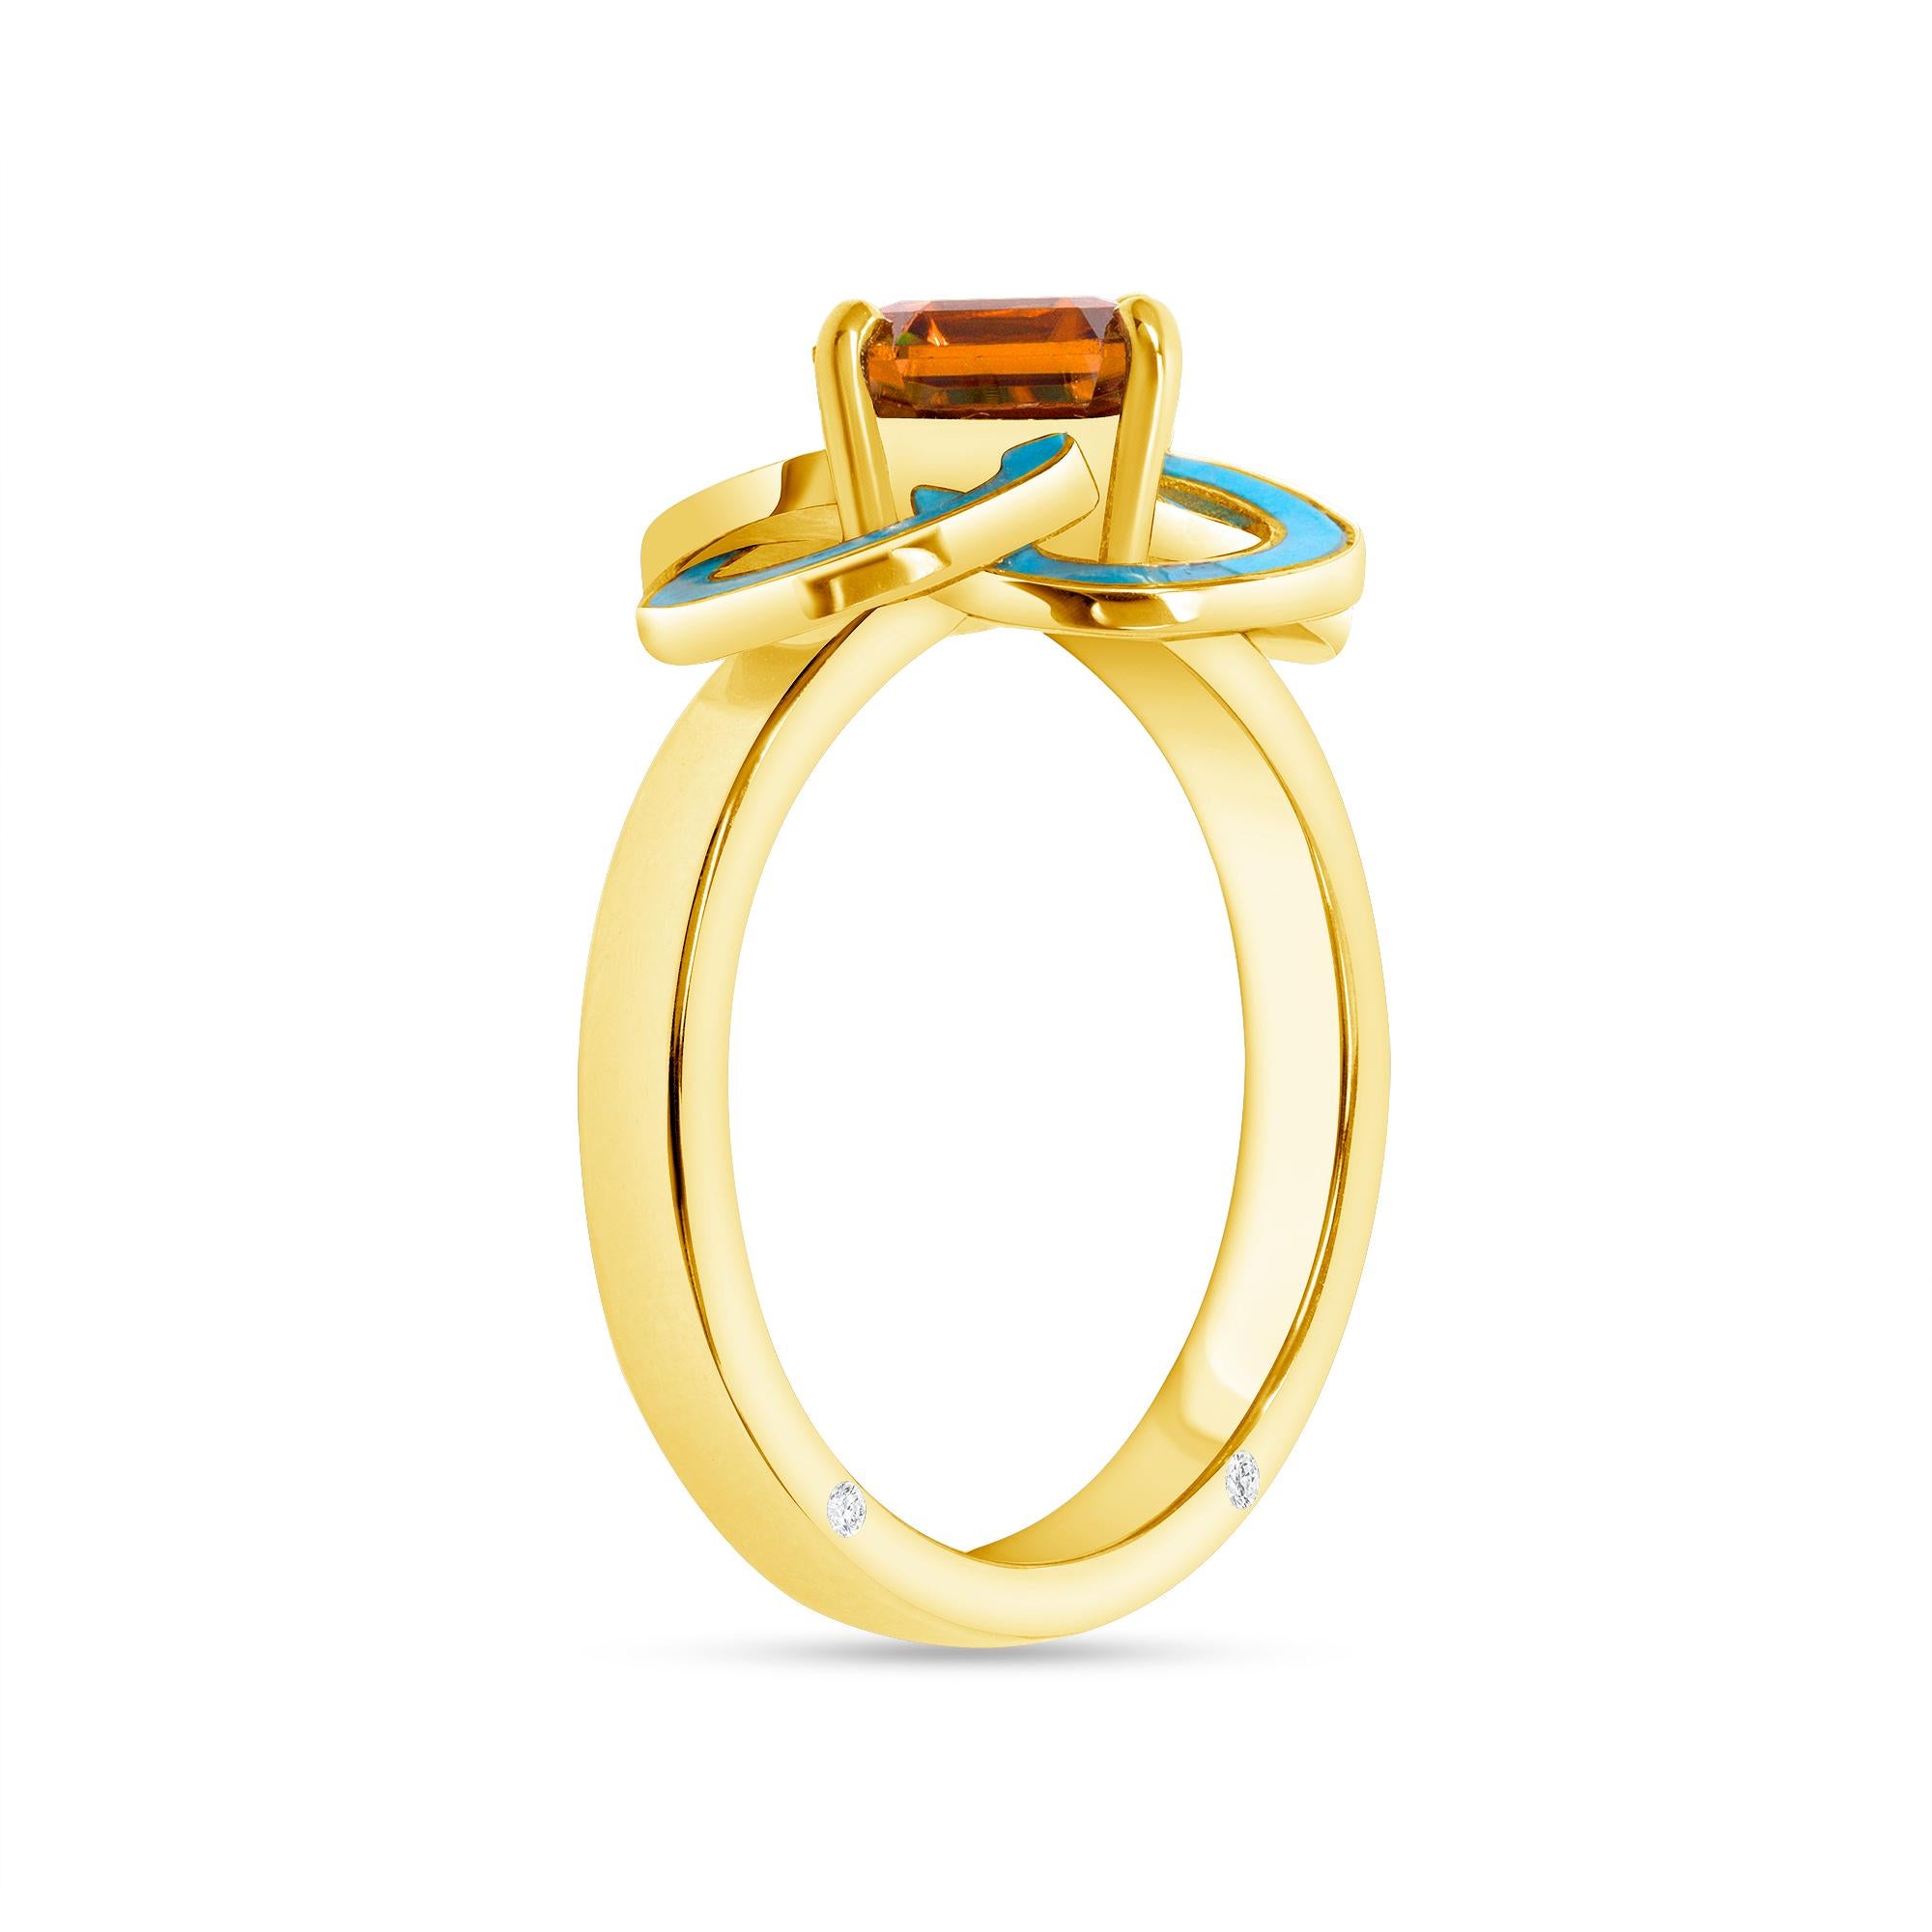 2.56 Carat Orange Zircon, Turquoise, Diamond, Yellow Gold Cocktail Ring, In Stock. Cette bague abstraite est ornée d'un anneau et d'une monture en or jaune 18 carats. Il présente des spirales géométriques qui rappellent les motifs celtiques. Ces